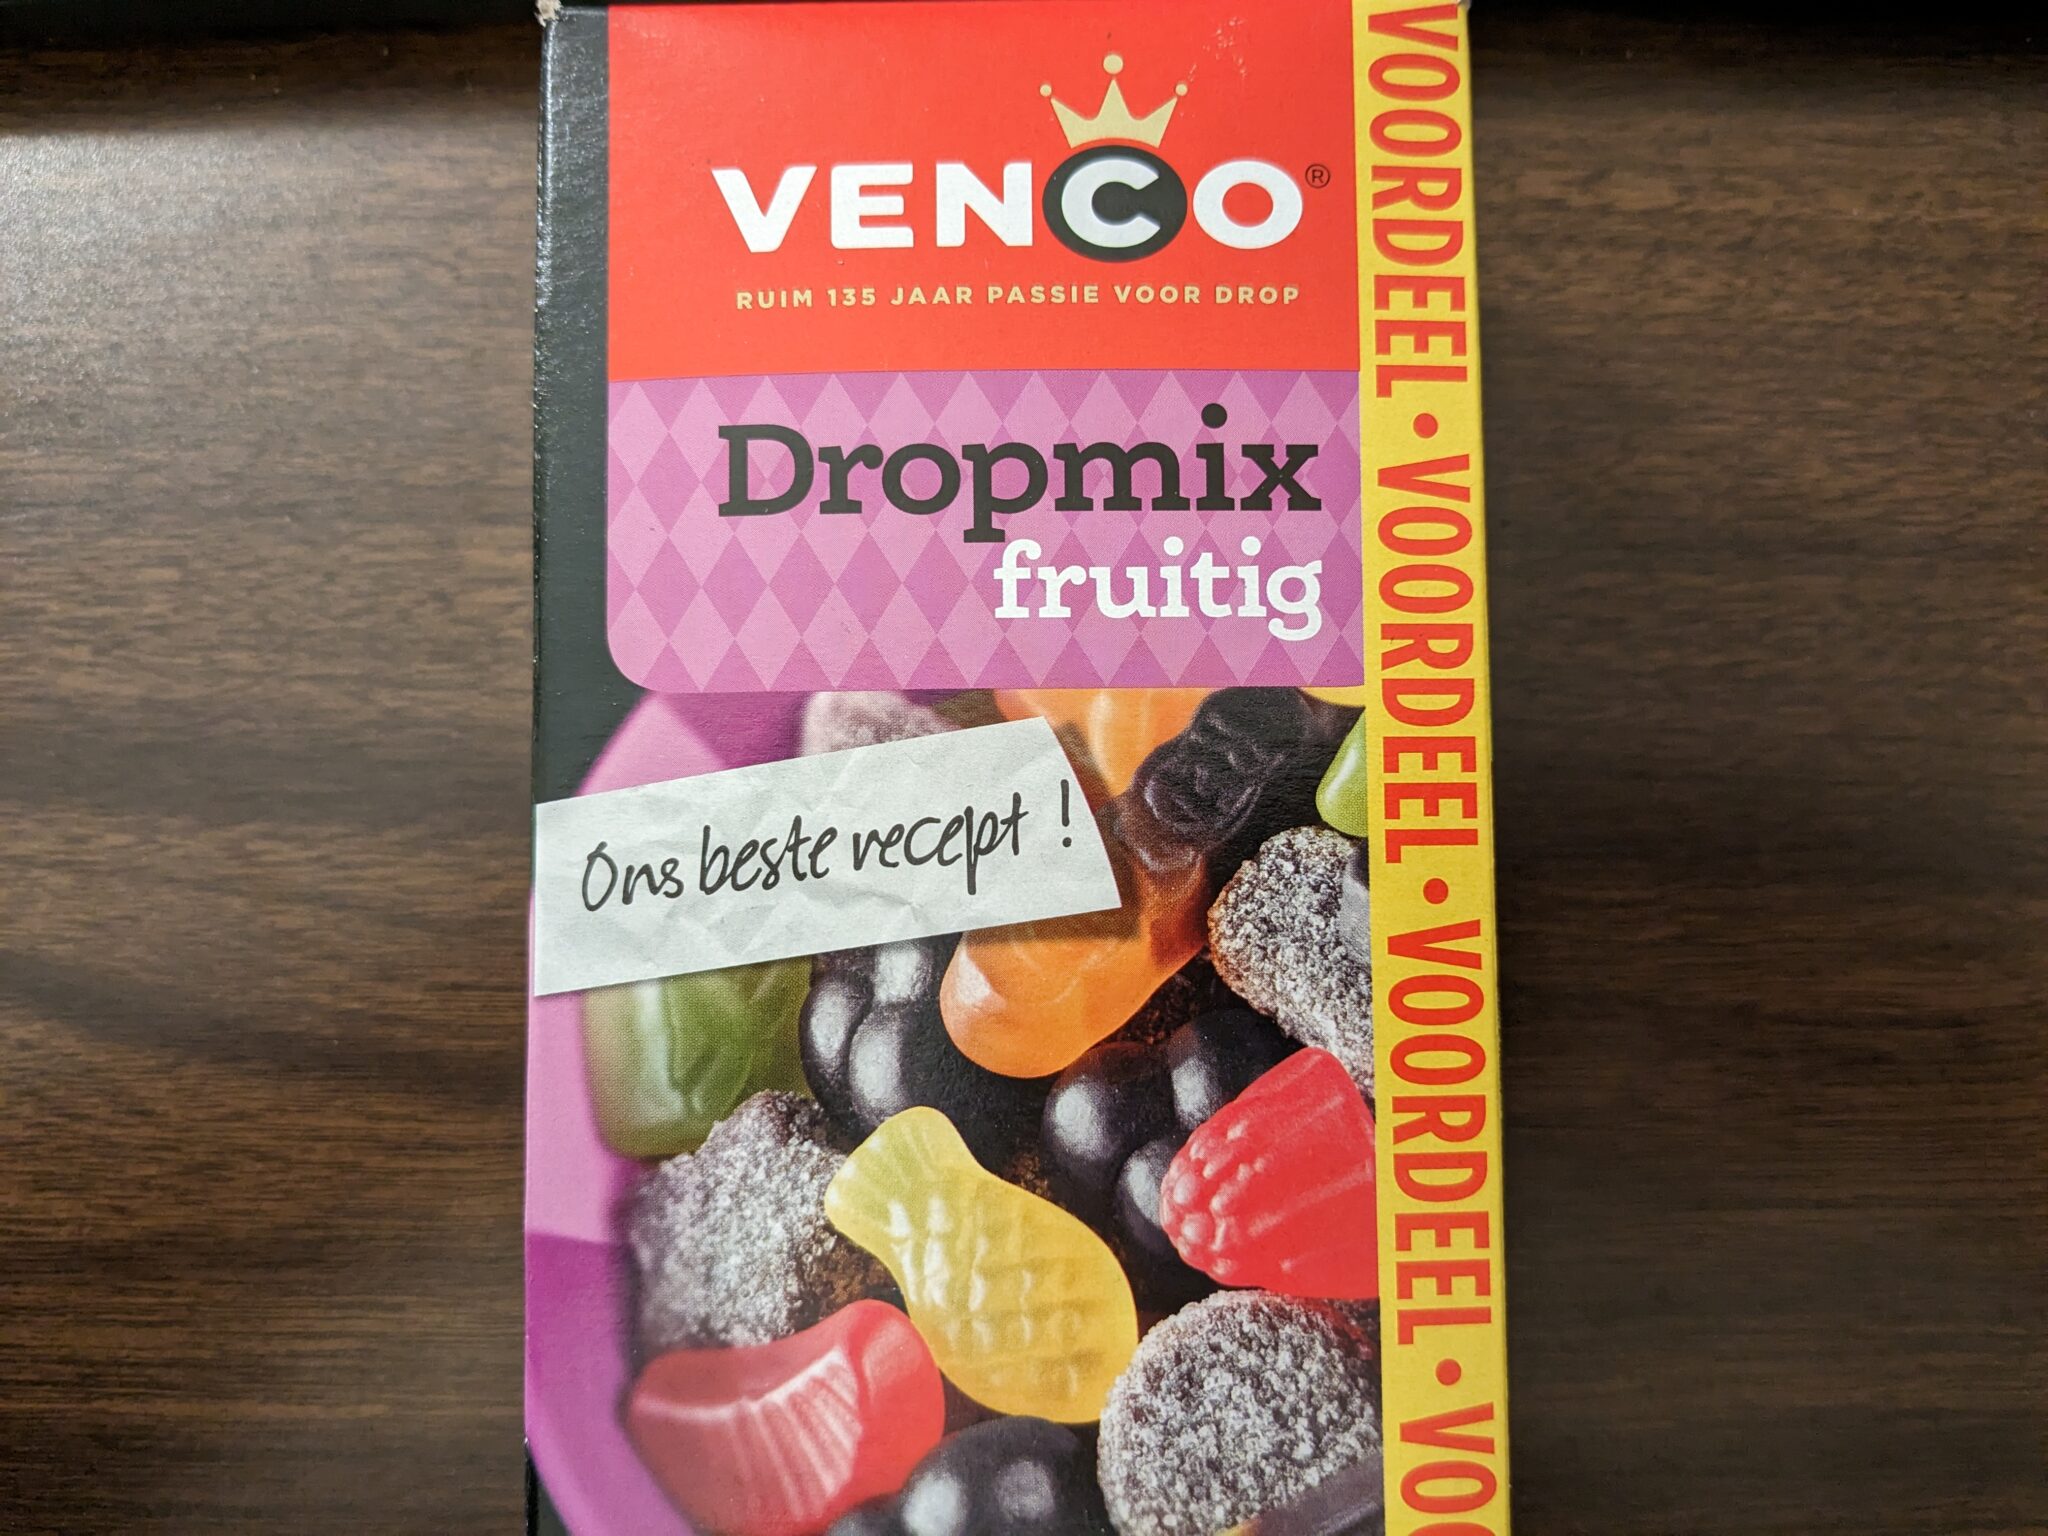 Venco – Dropmix Fruitig